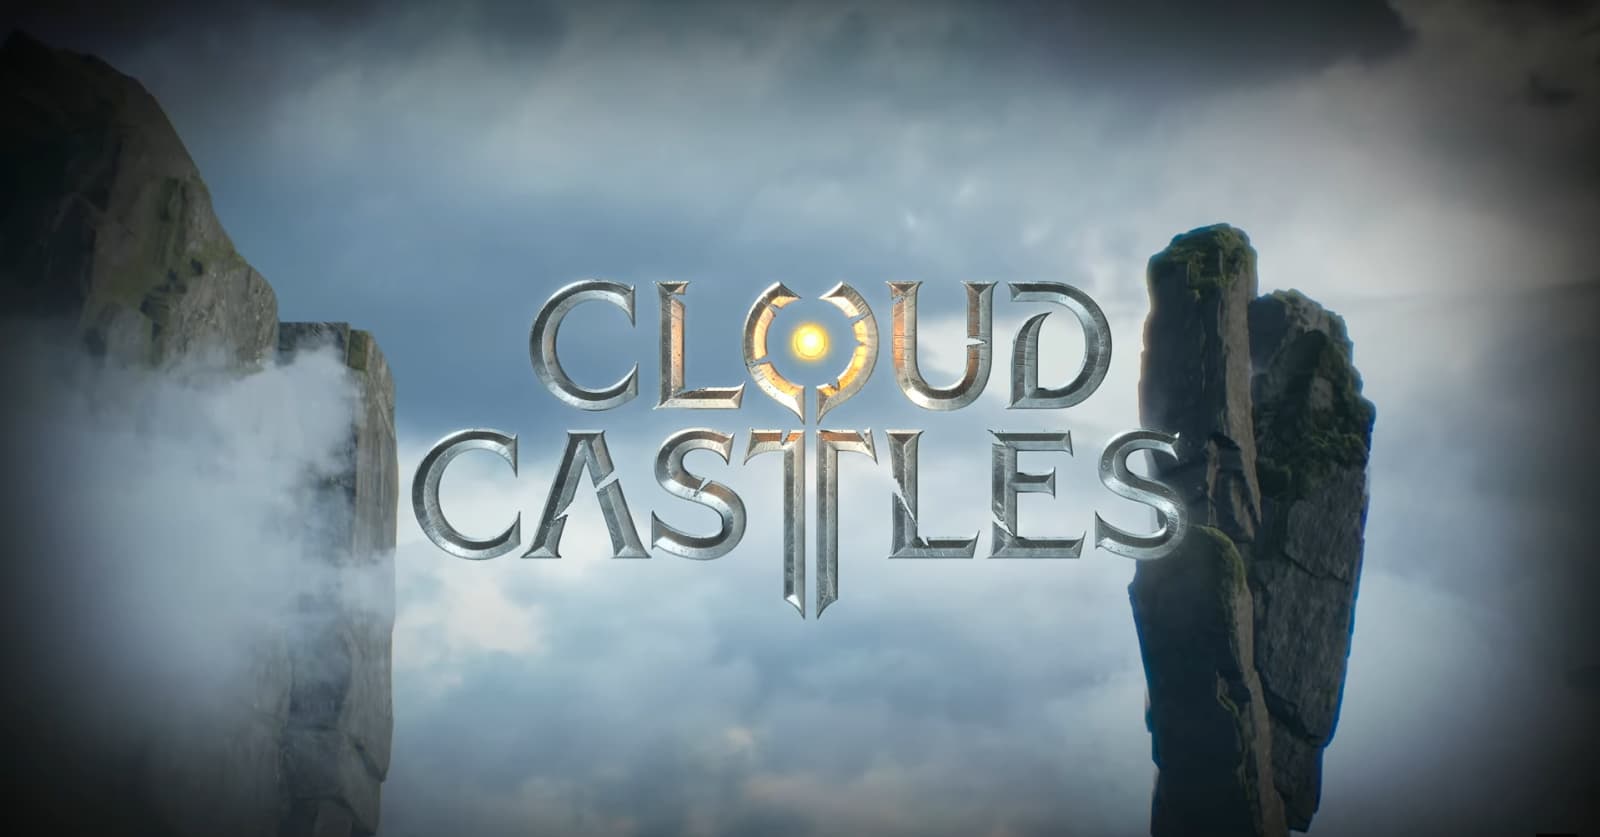 The logo "CLOUD CASTLES" emerges above mist-enshrouded cliffs